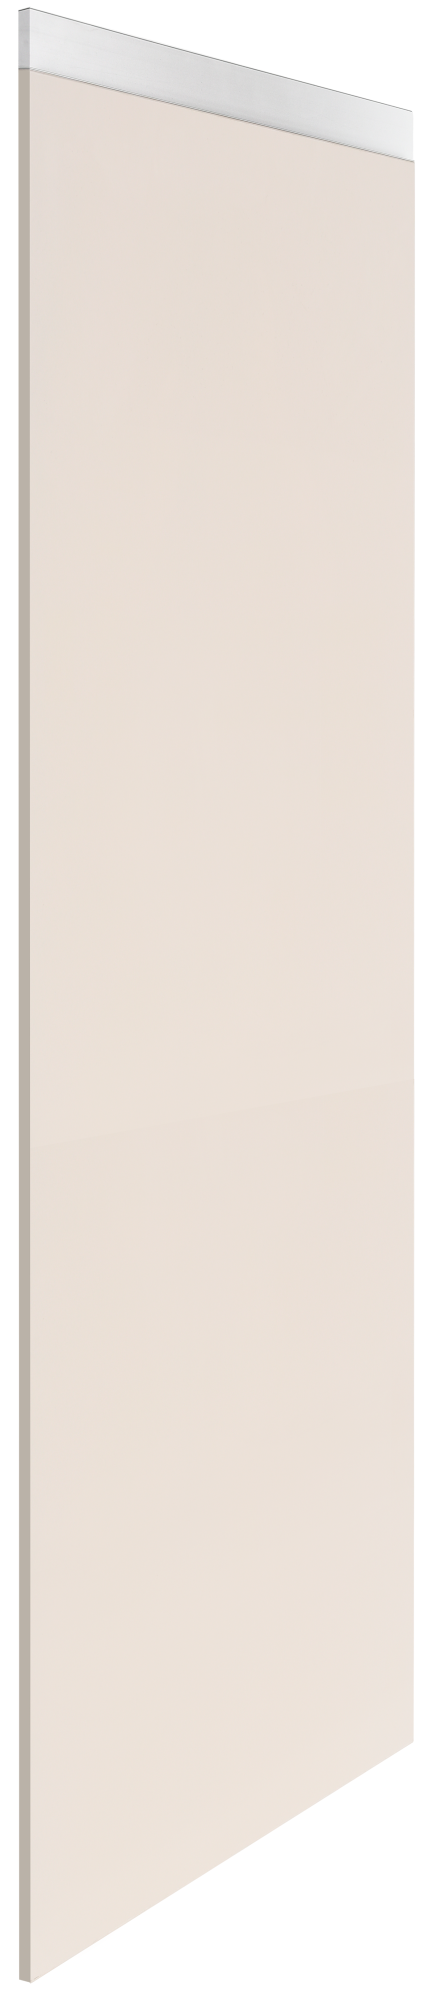 Costado delinia id mikonos marrón 183,6x76,8 cm